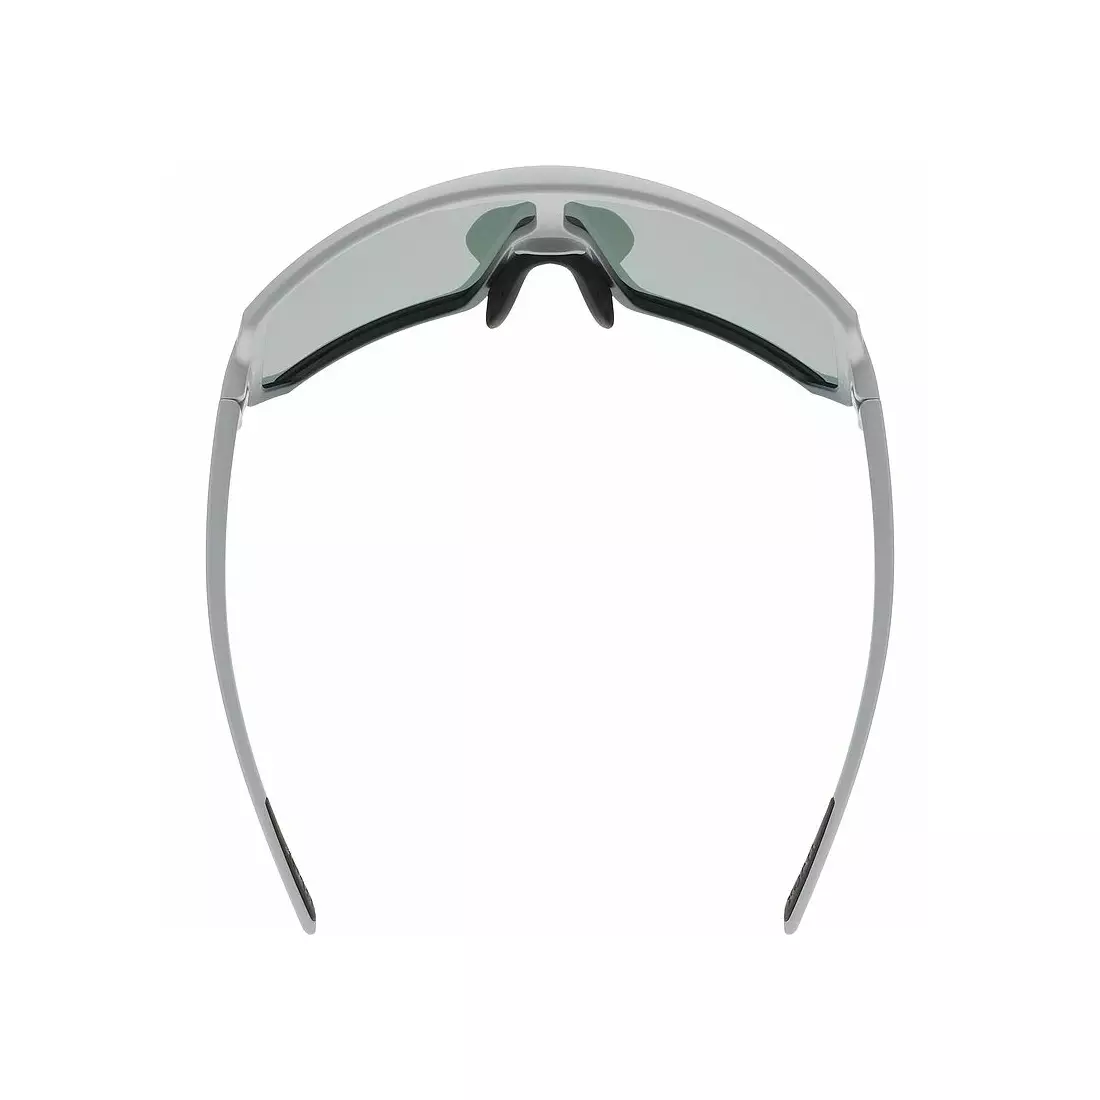 Športové okuliare UVEX Sportstyle 235 zrkadlovo modré (S2), šedé